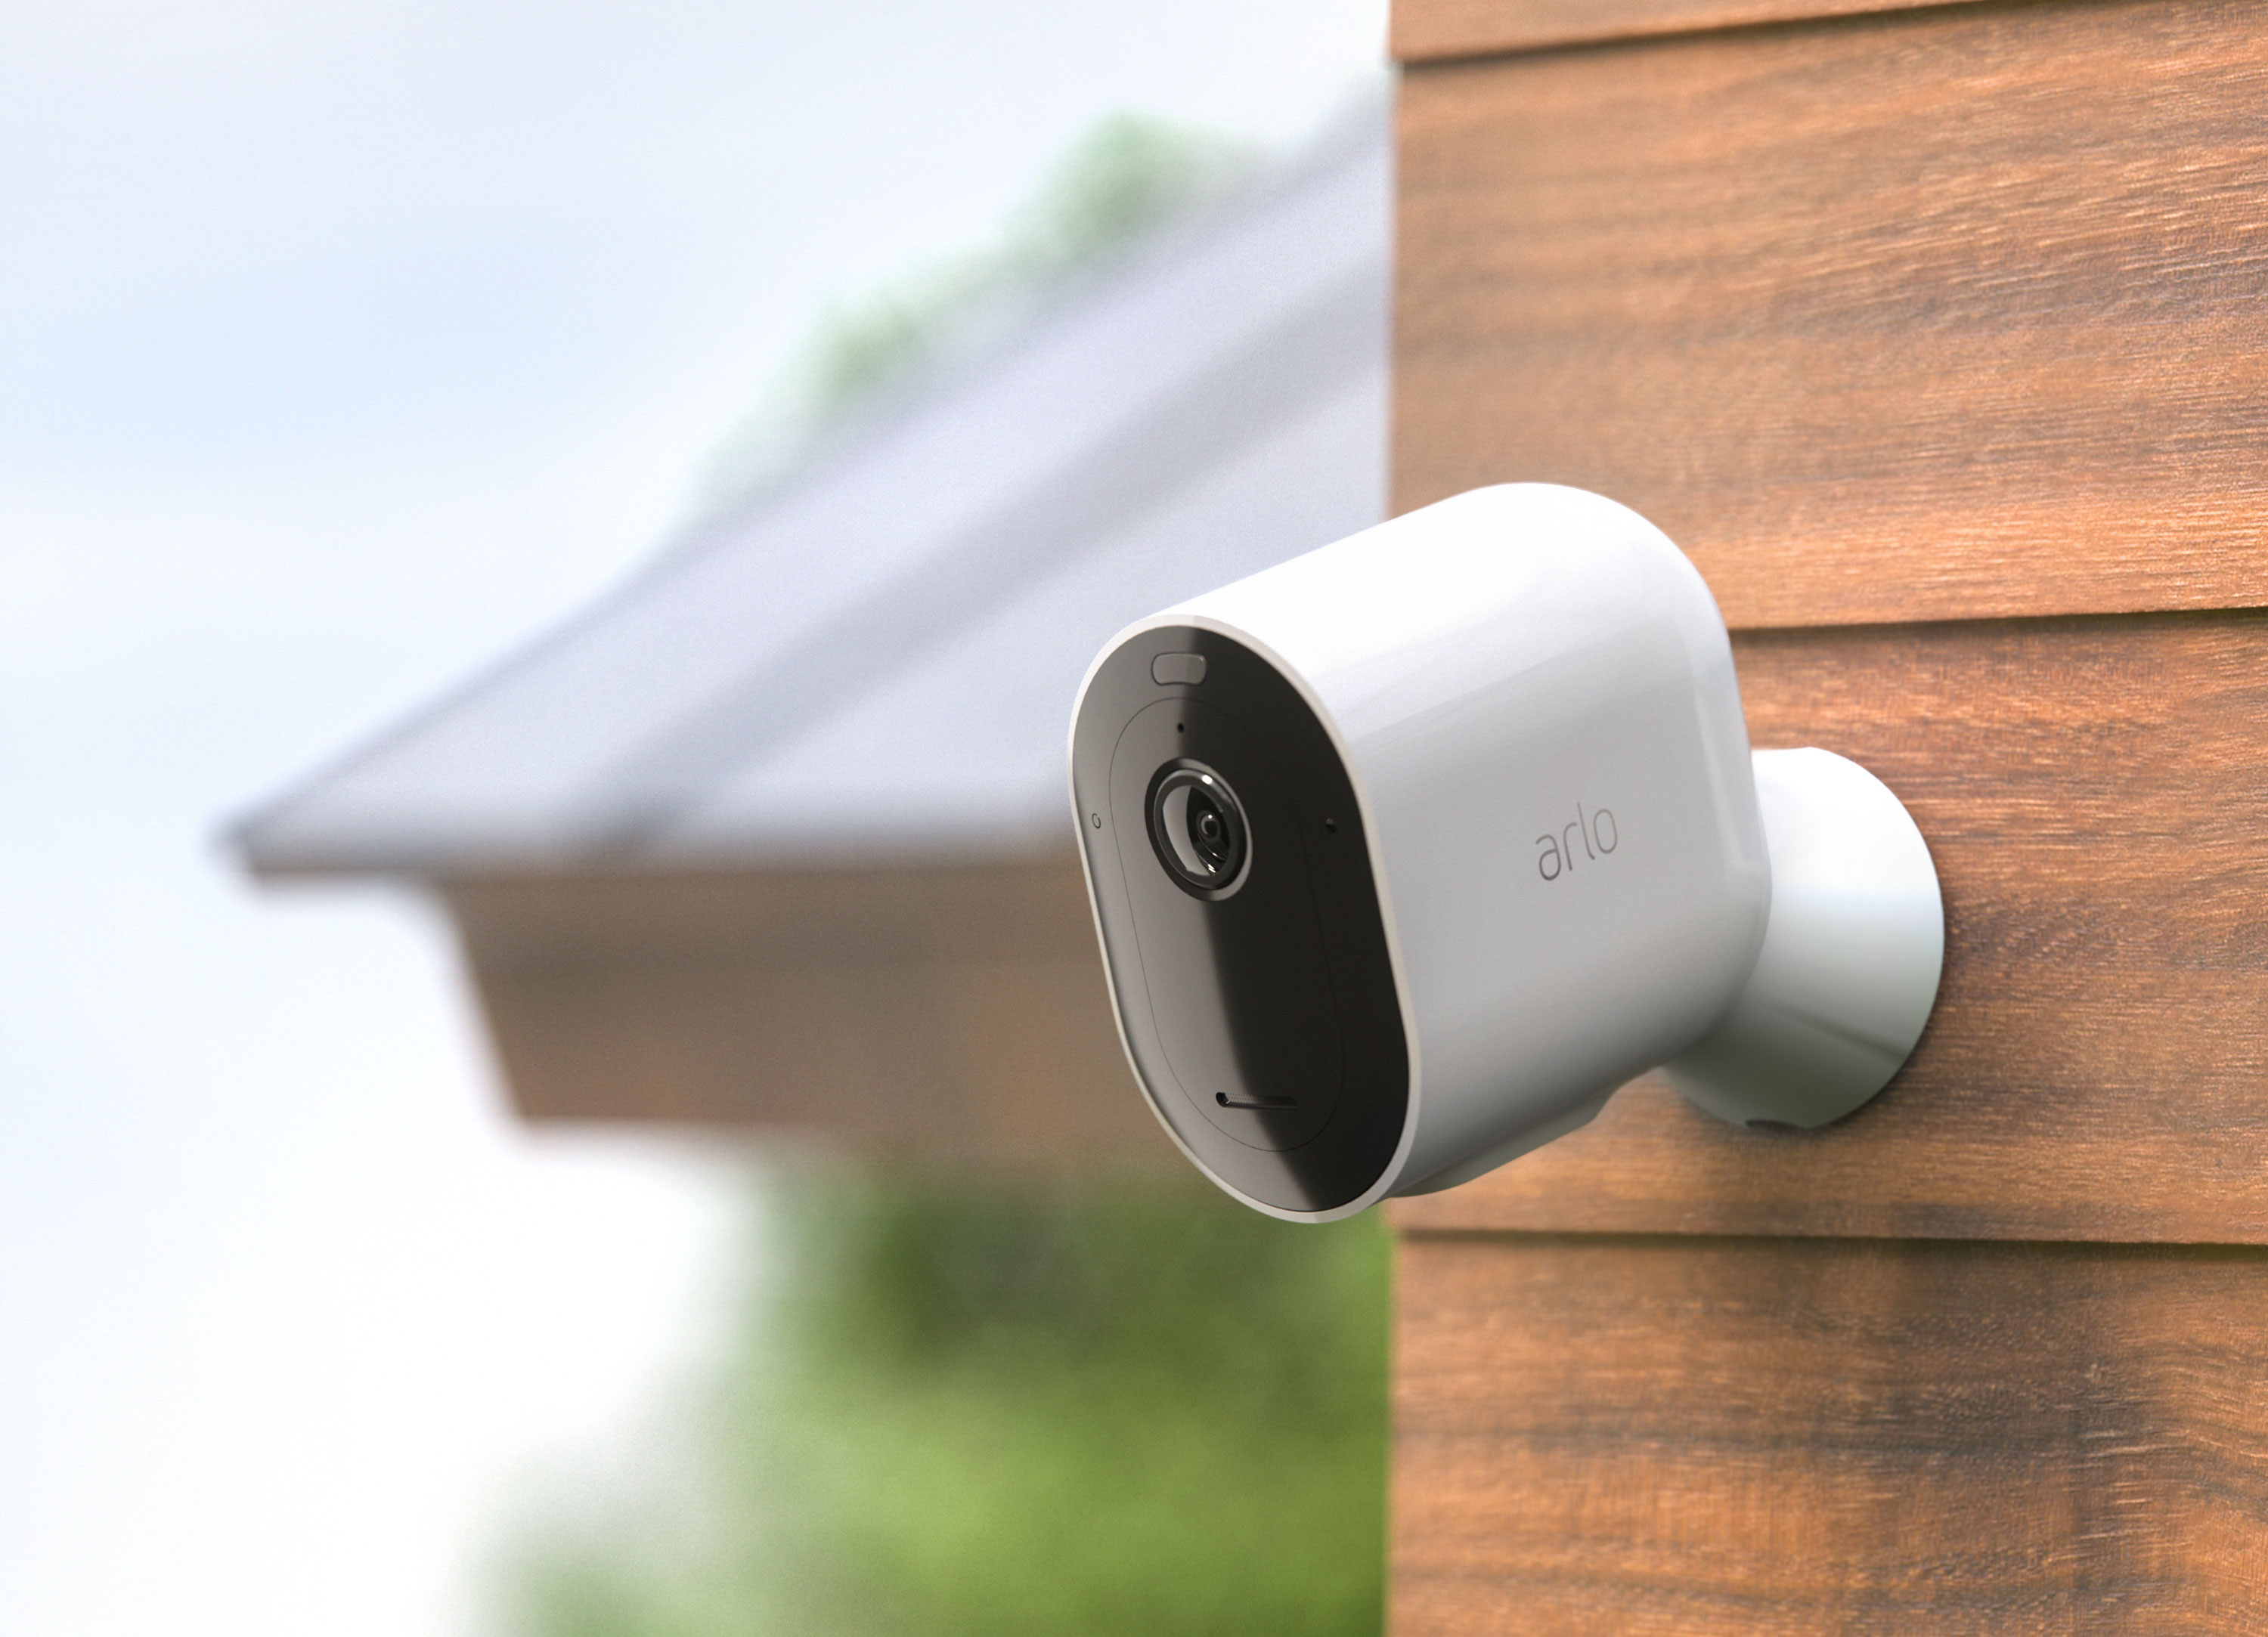 Caméra de surveillance sans fil Bluetooth Google Nest Cam intérieure  extérieure Blanc neige - Google